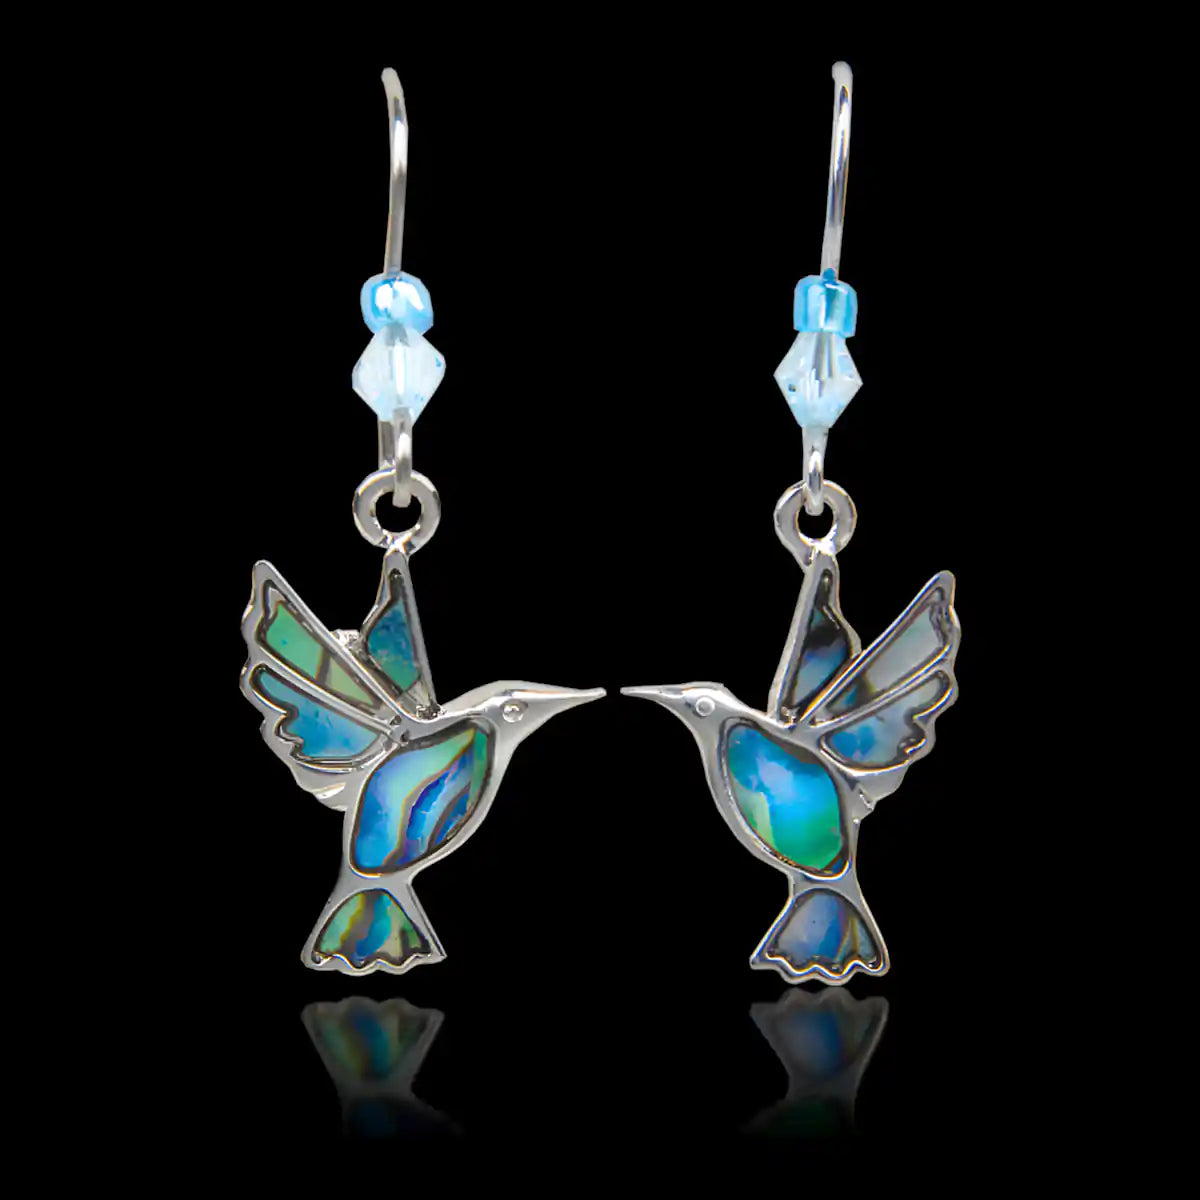 Glacier pearle hummingbirds earrings